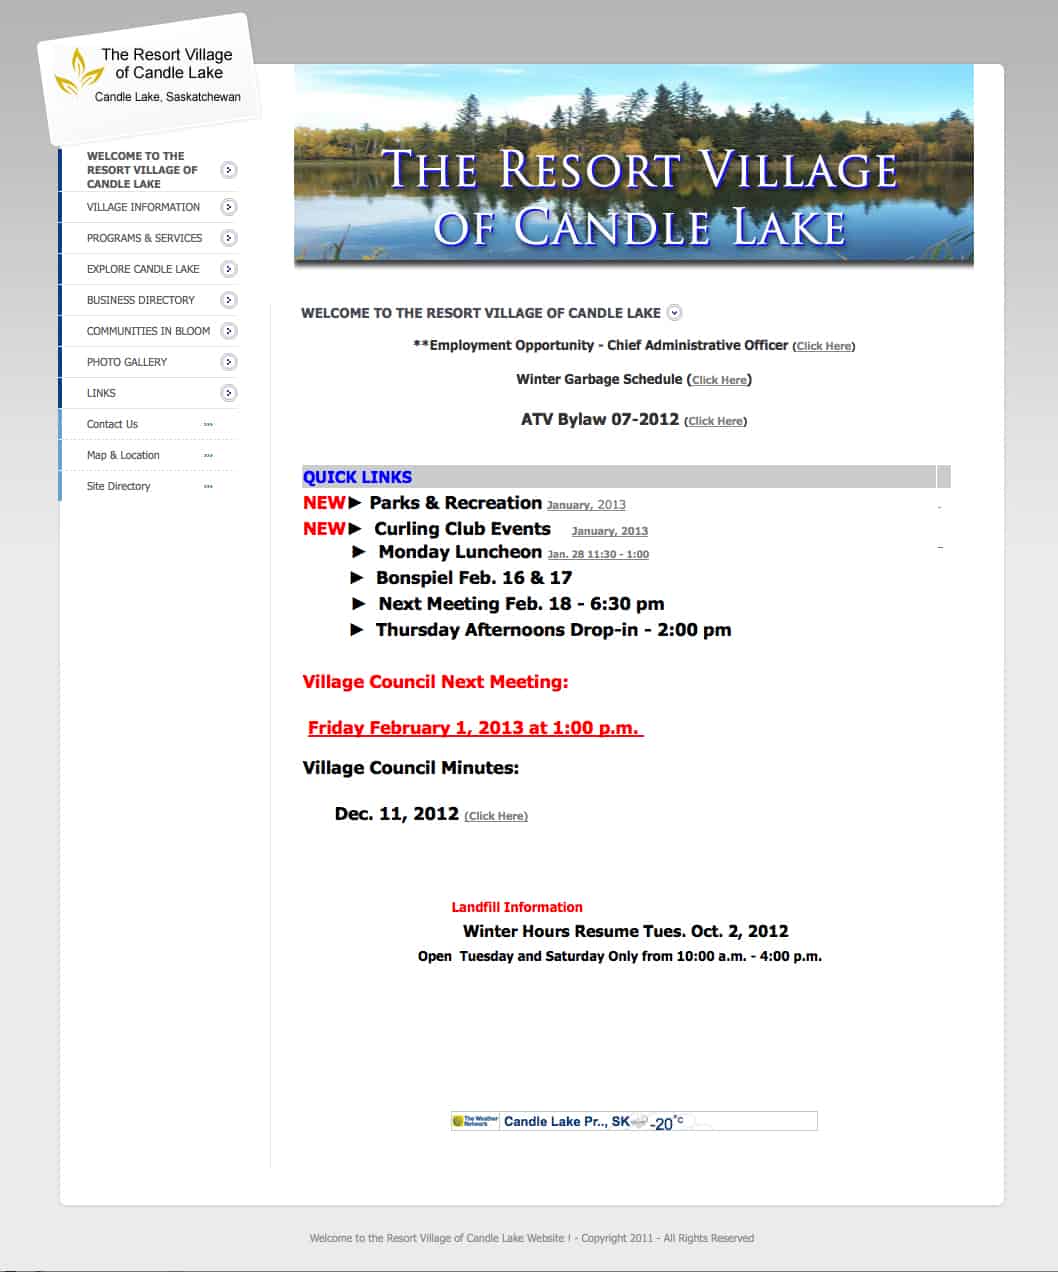 The Resort Village of Candle Lake old website design